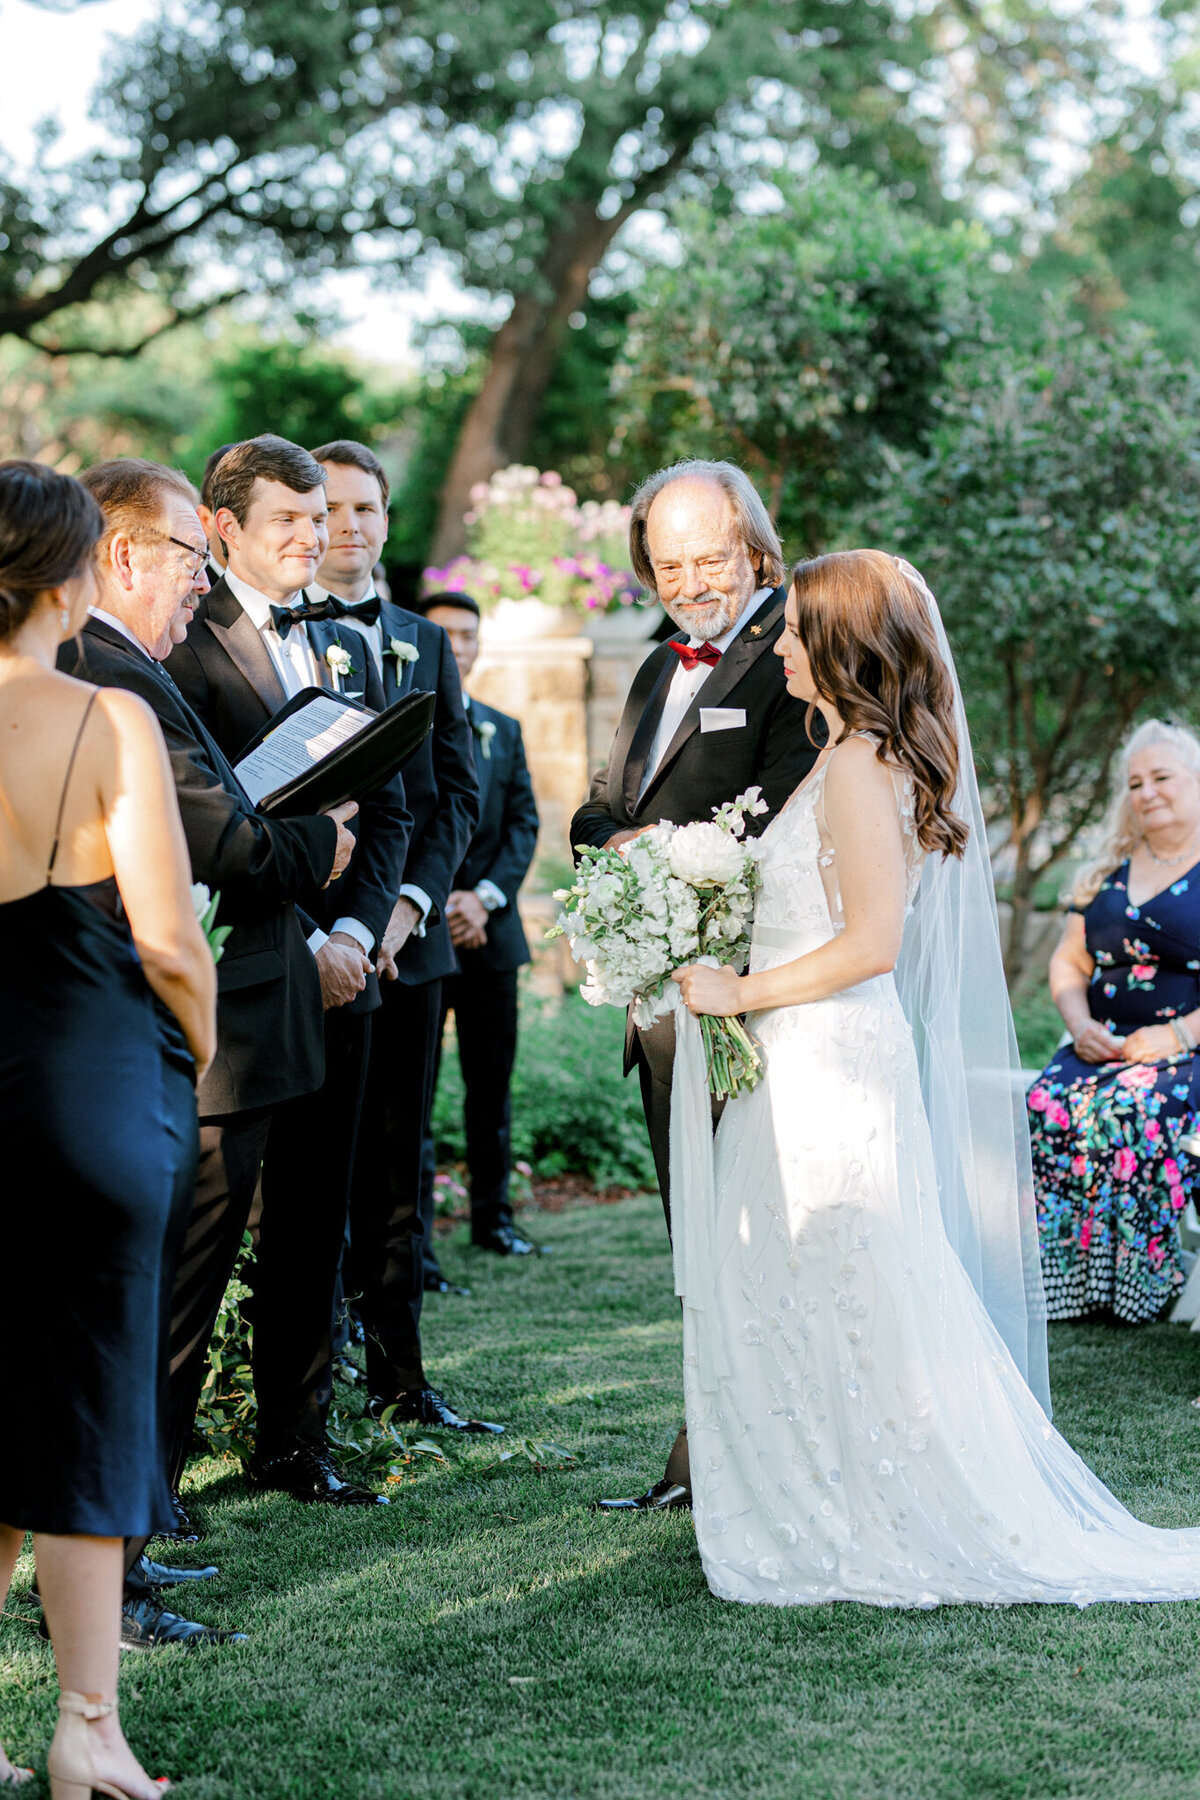 Gena & Matt's Wedding at the Dallas Arboretum | Dallas Wedding Photographer | Sami Kathryn Photography-136